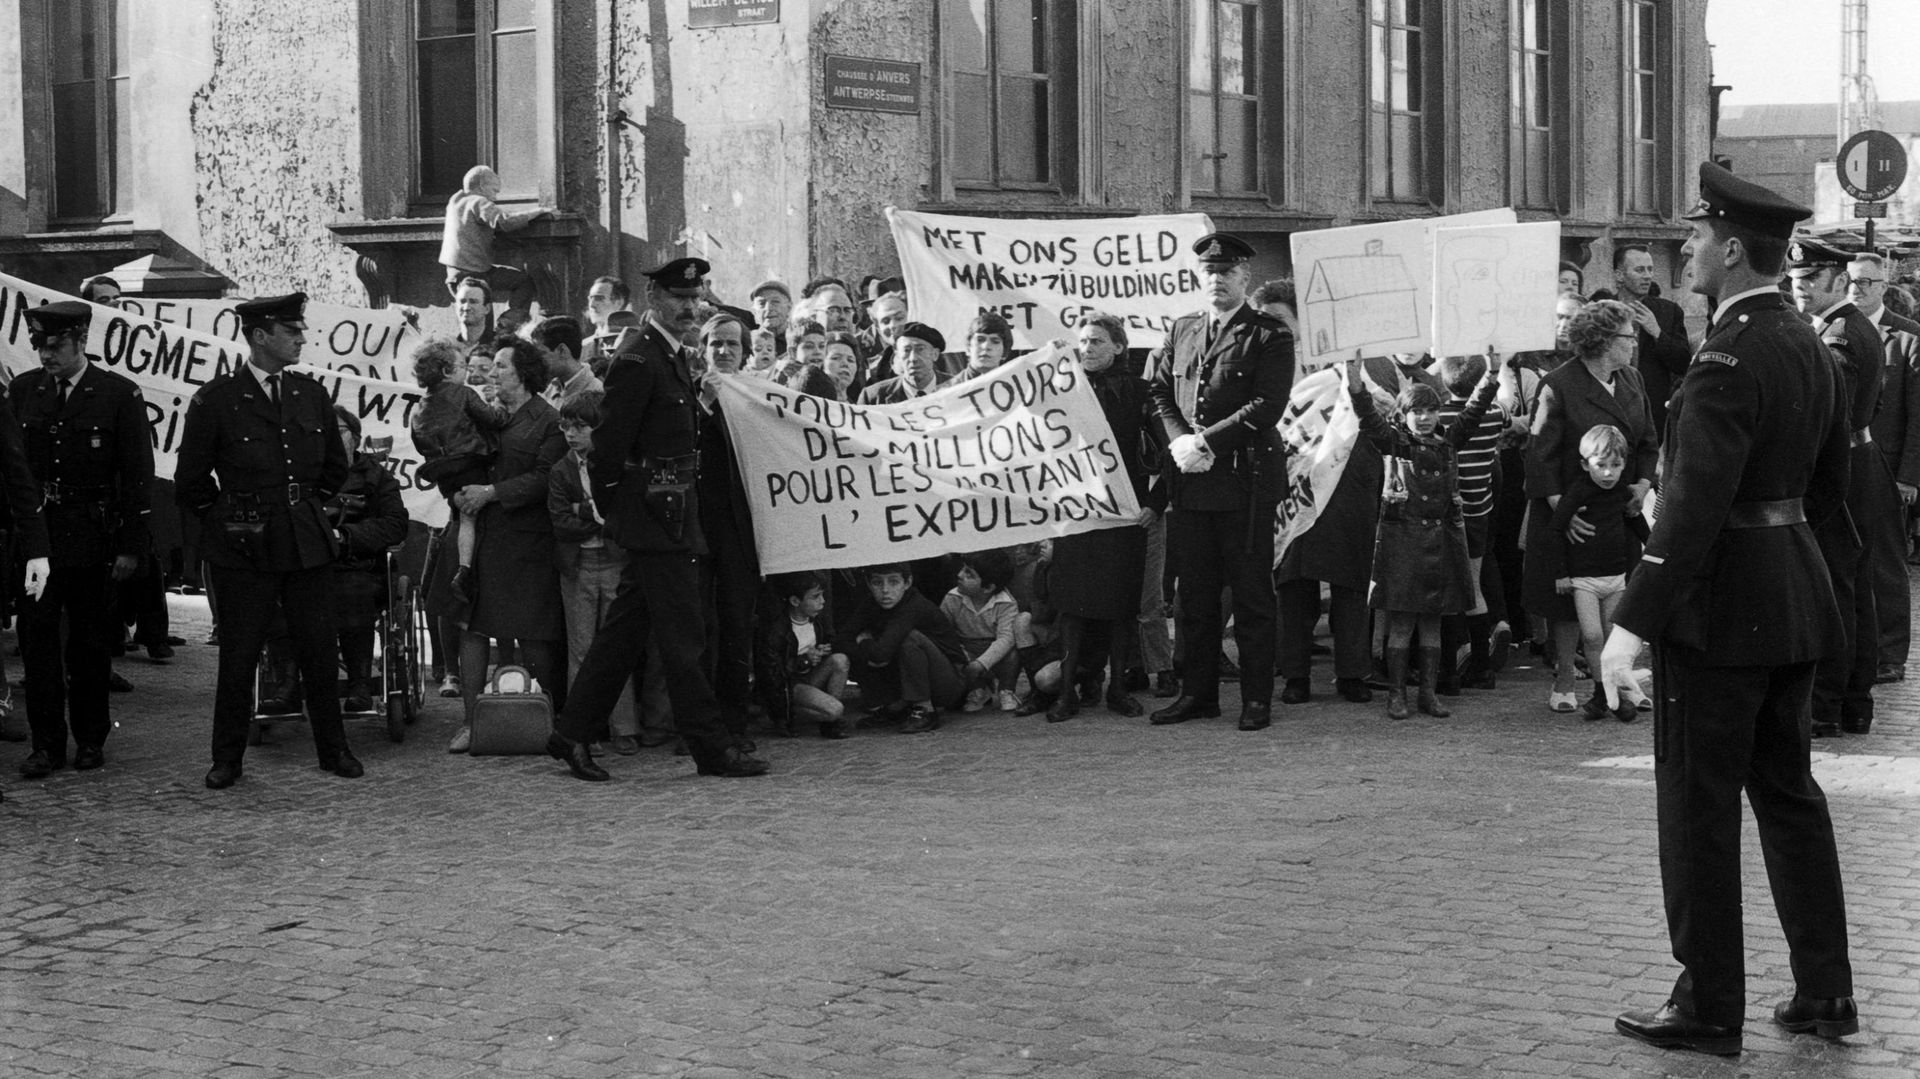 Mobilisation des habitants, chaussée d’Anvers pour s’opposer au projet.